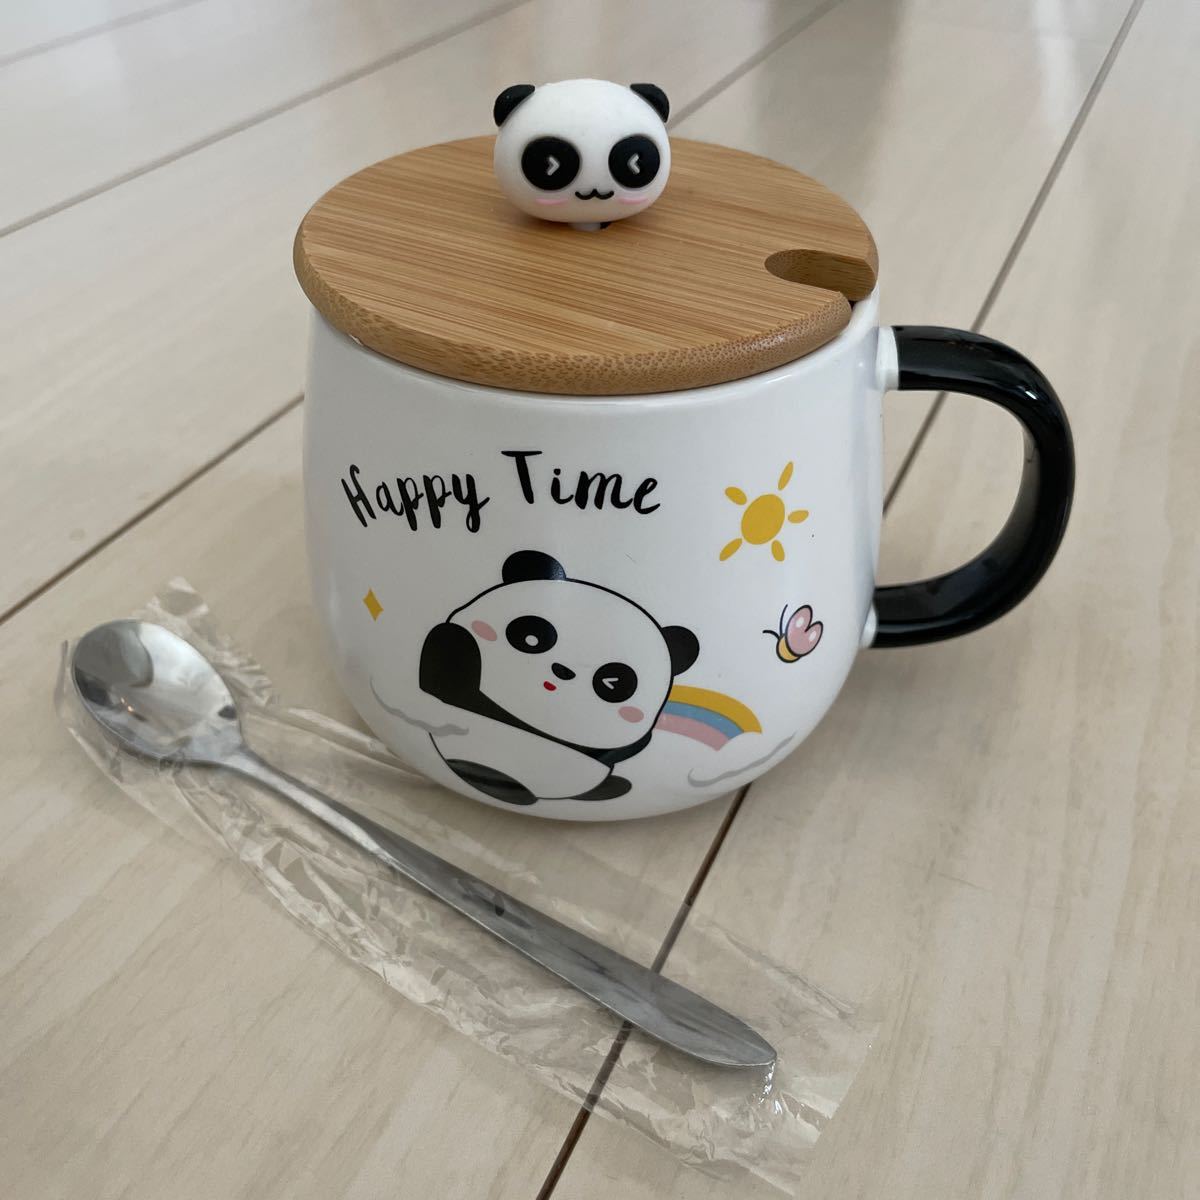 New Unused Mug Panda Ceramic Mug with Lid Spoon Milk Cup Fairy Tale Coffee Cup Hand Painted Animal Breakfast Large Capacity Tea, tea utensils, Mug, Made of ceramic